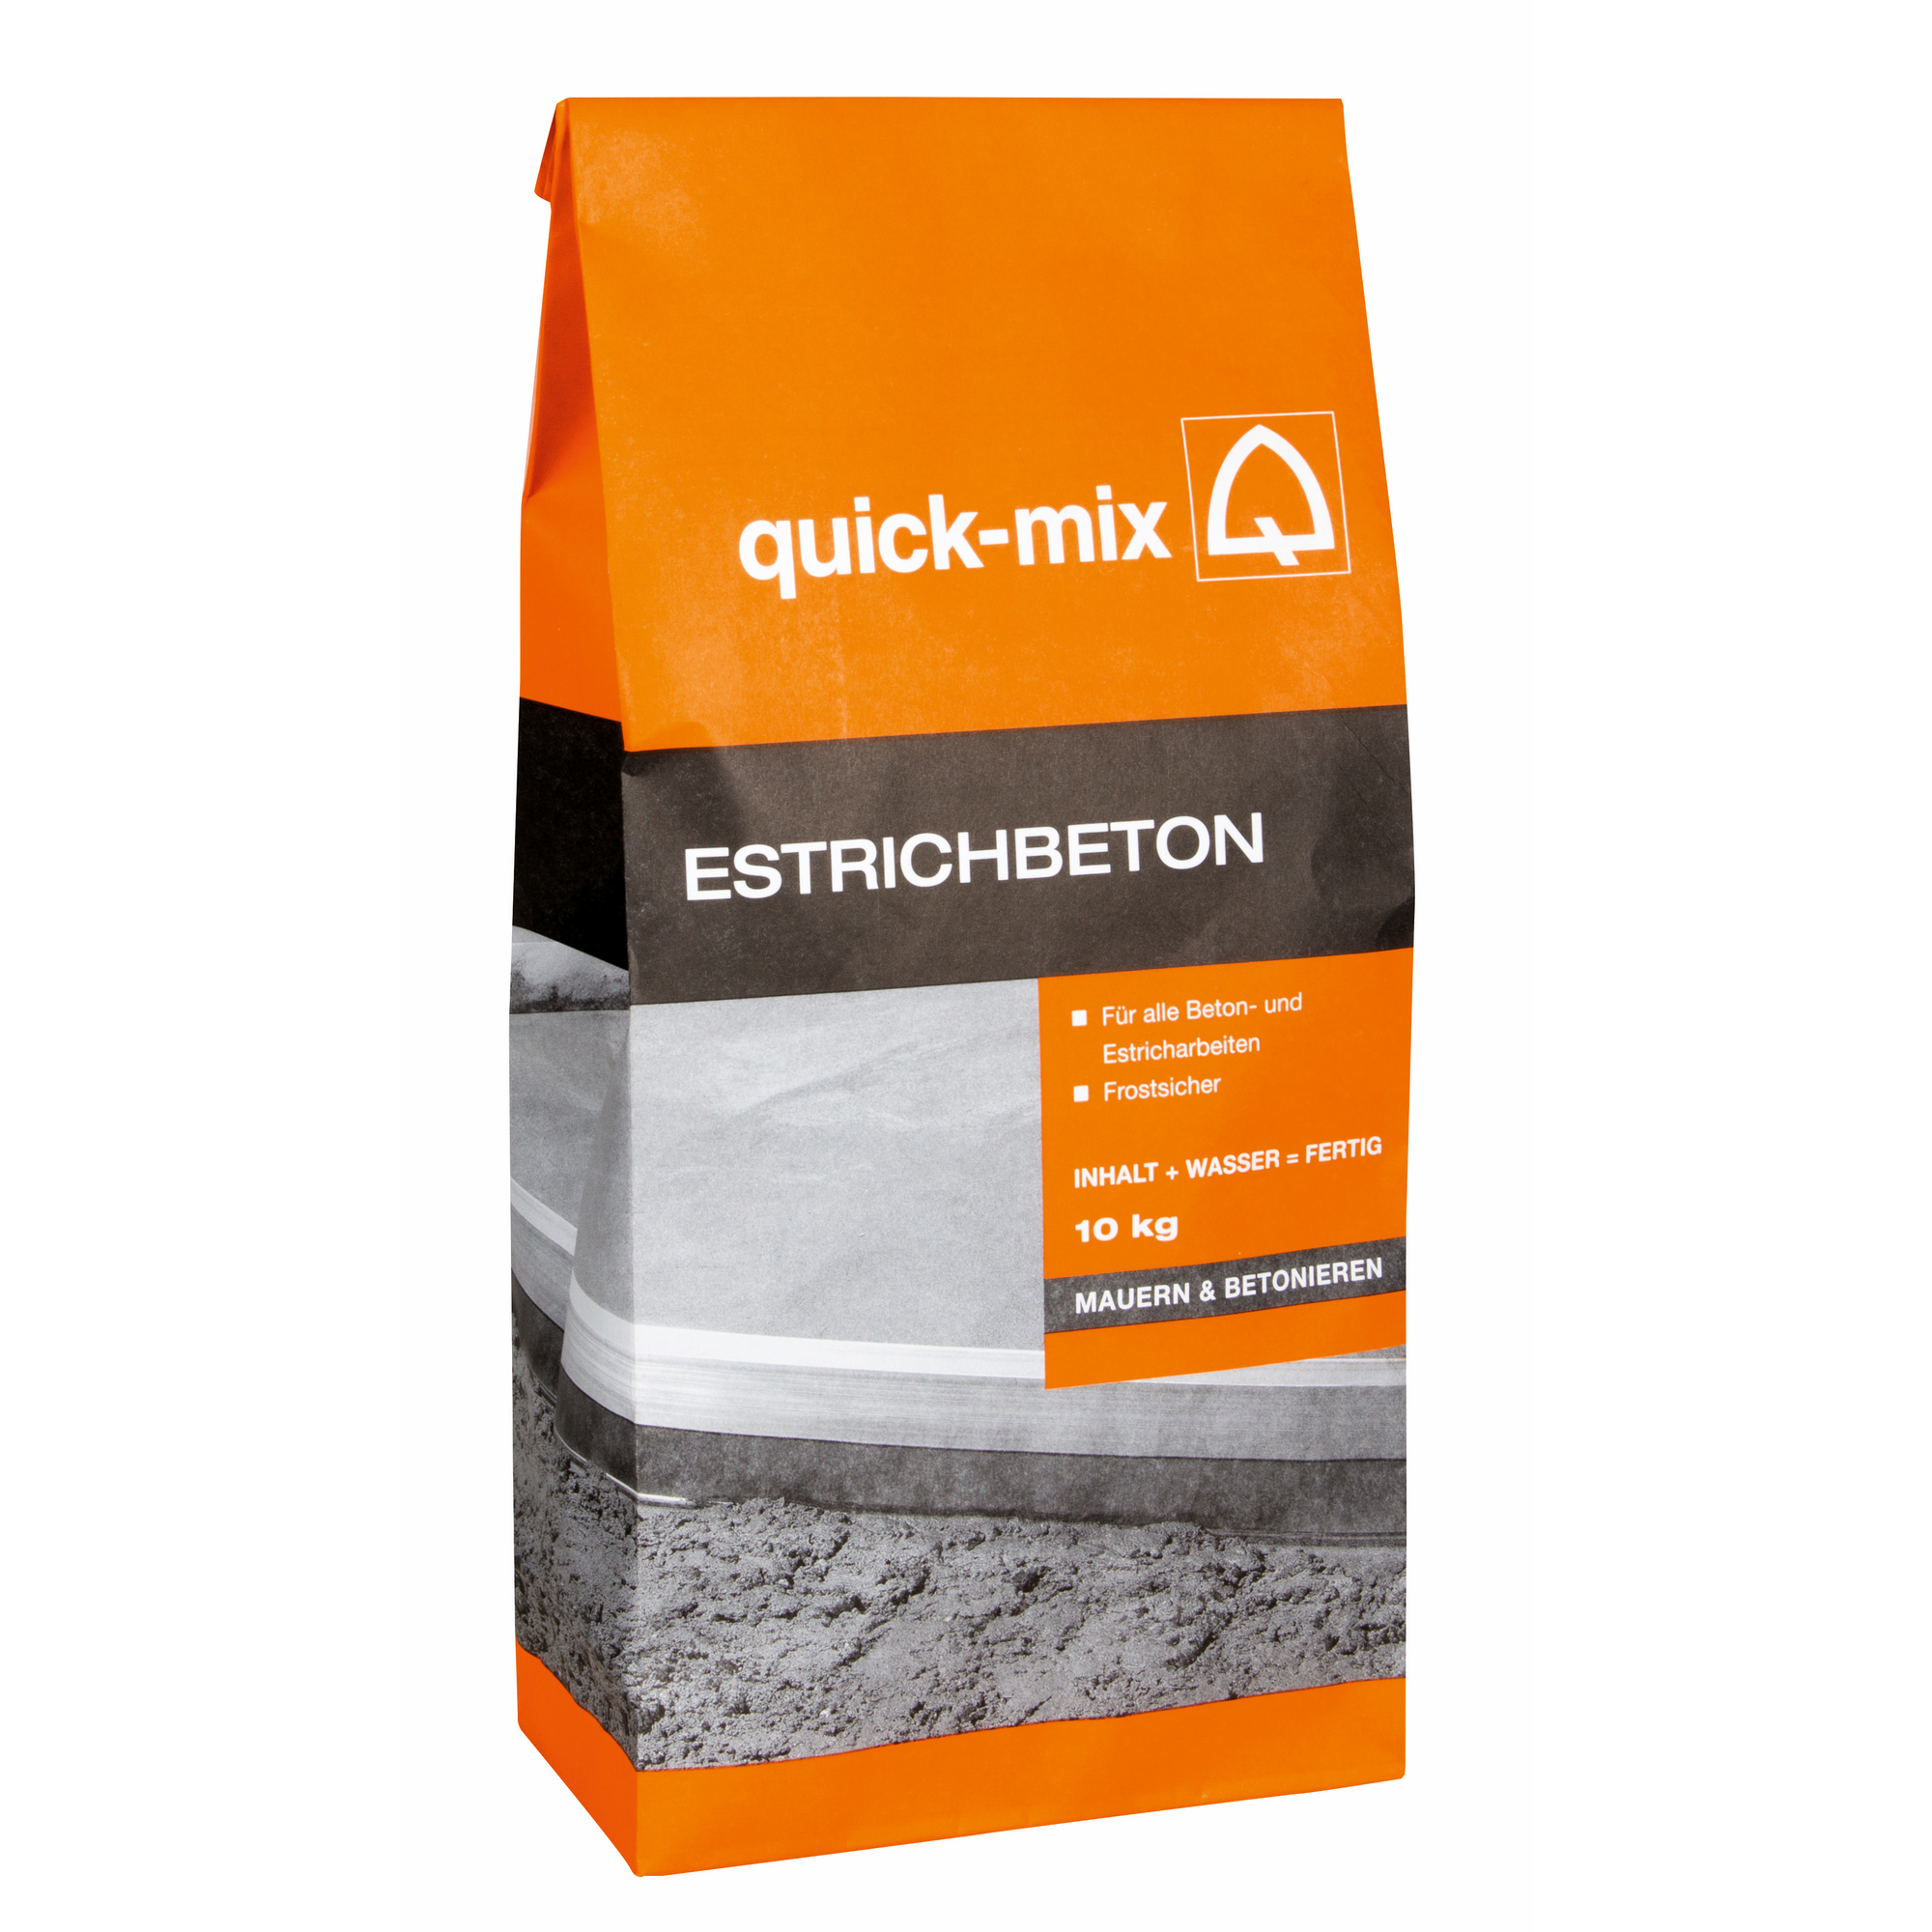 Estrichbeton 10 kg + product picture